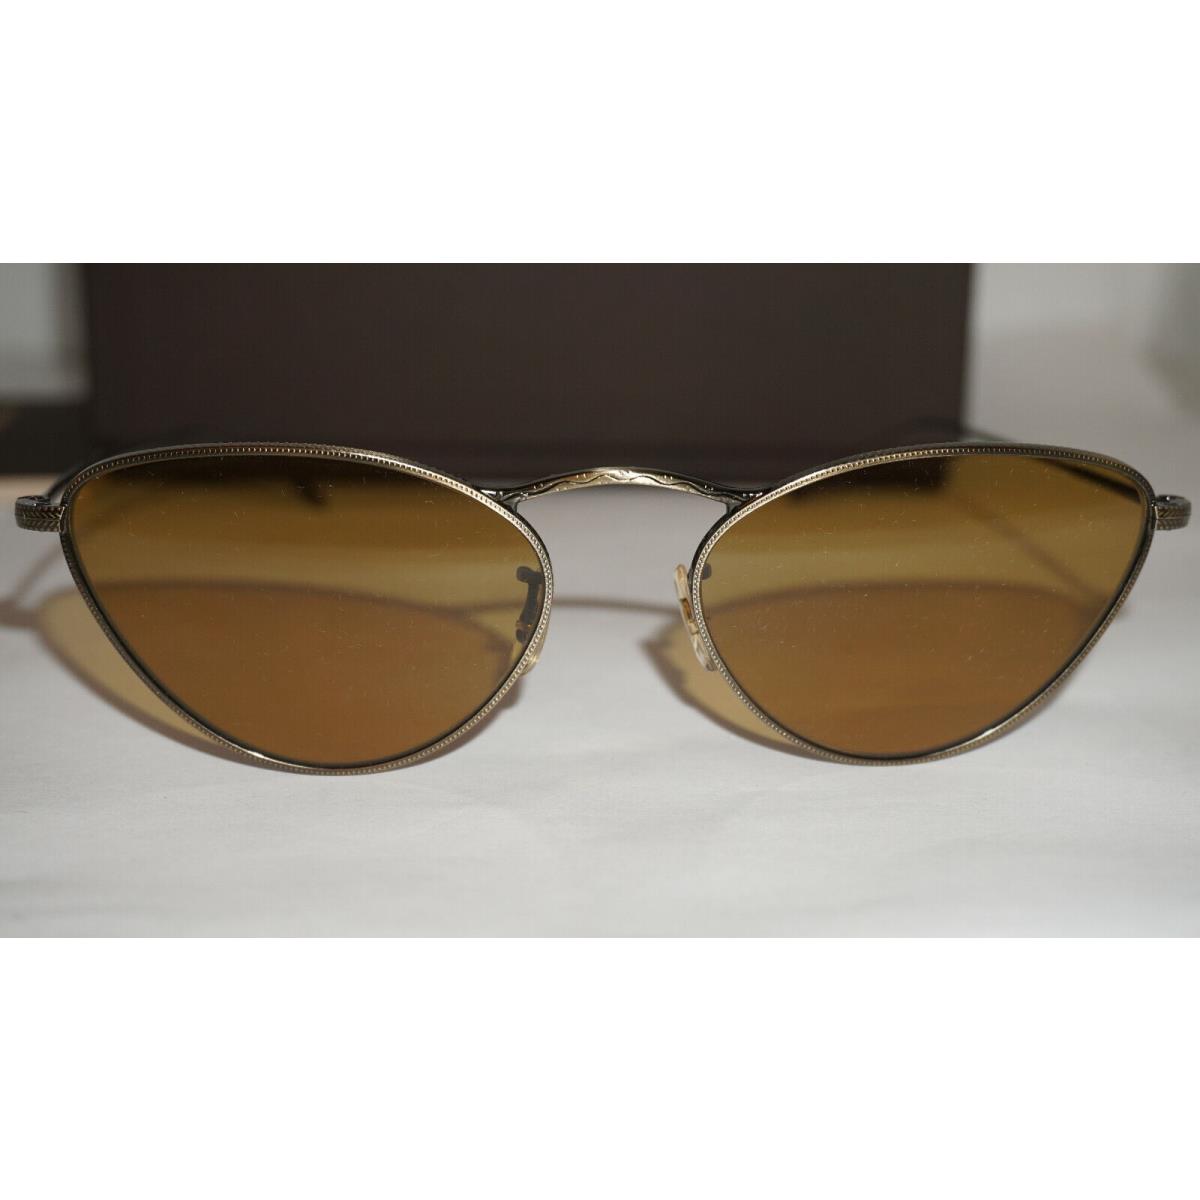 Oliver Peoples sunglasses  - Gold Frame, Brown Lens 1